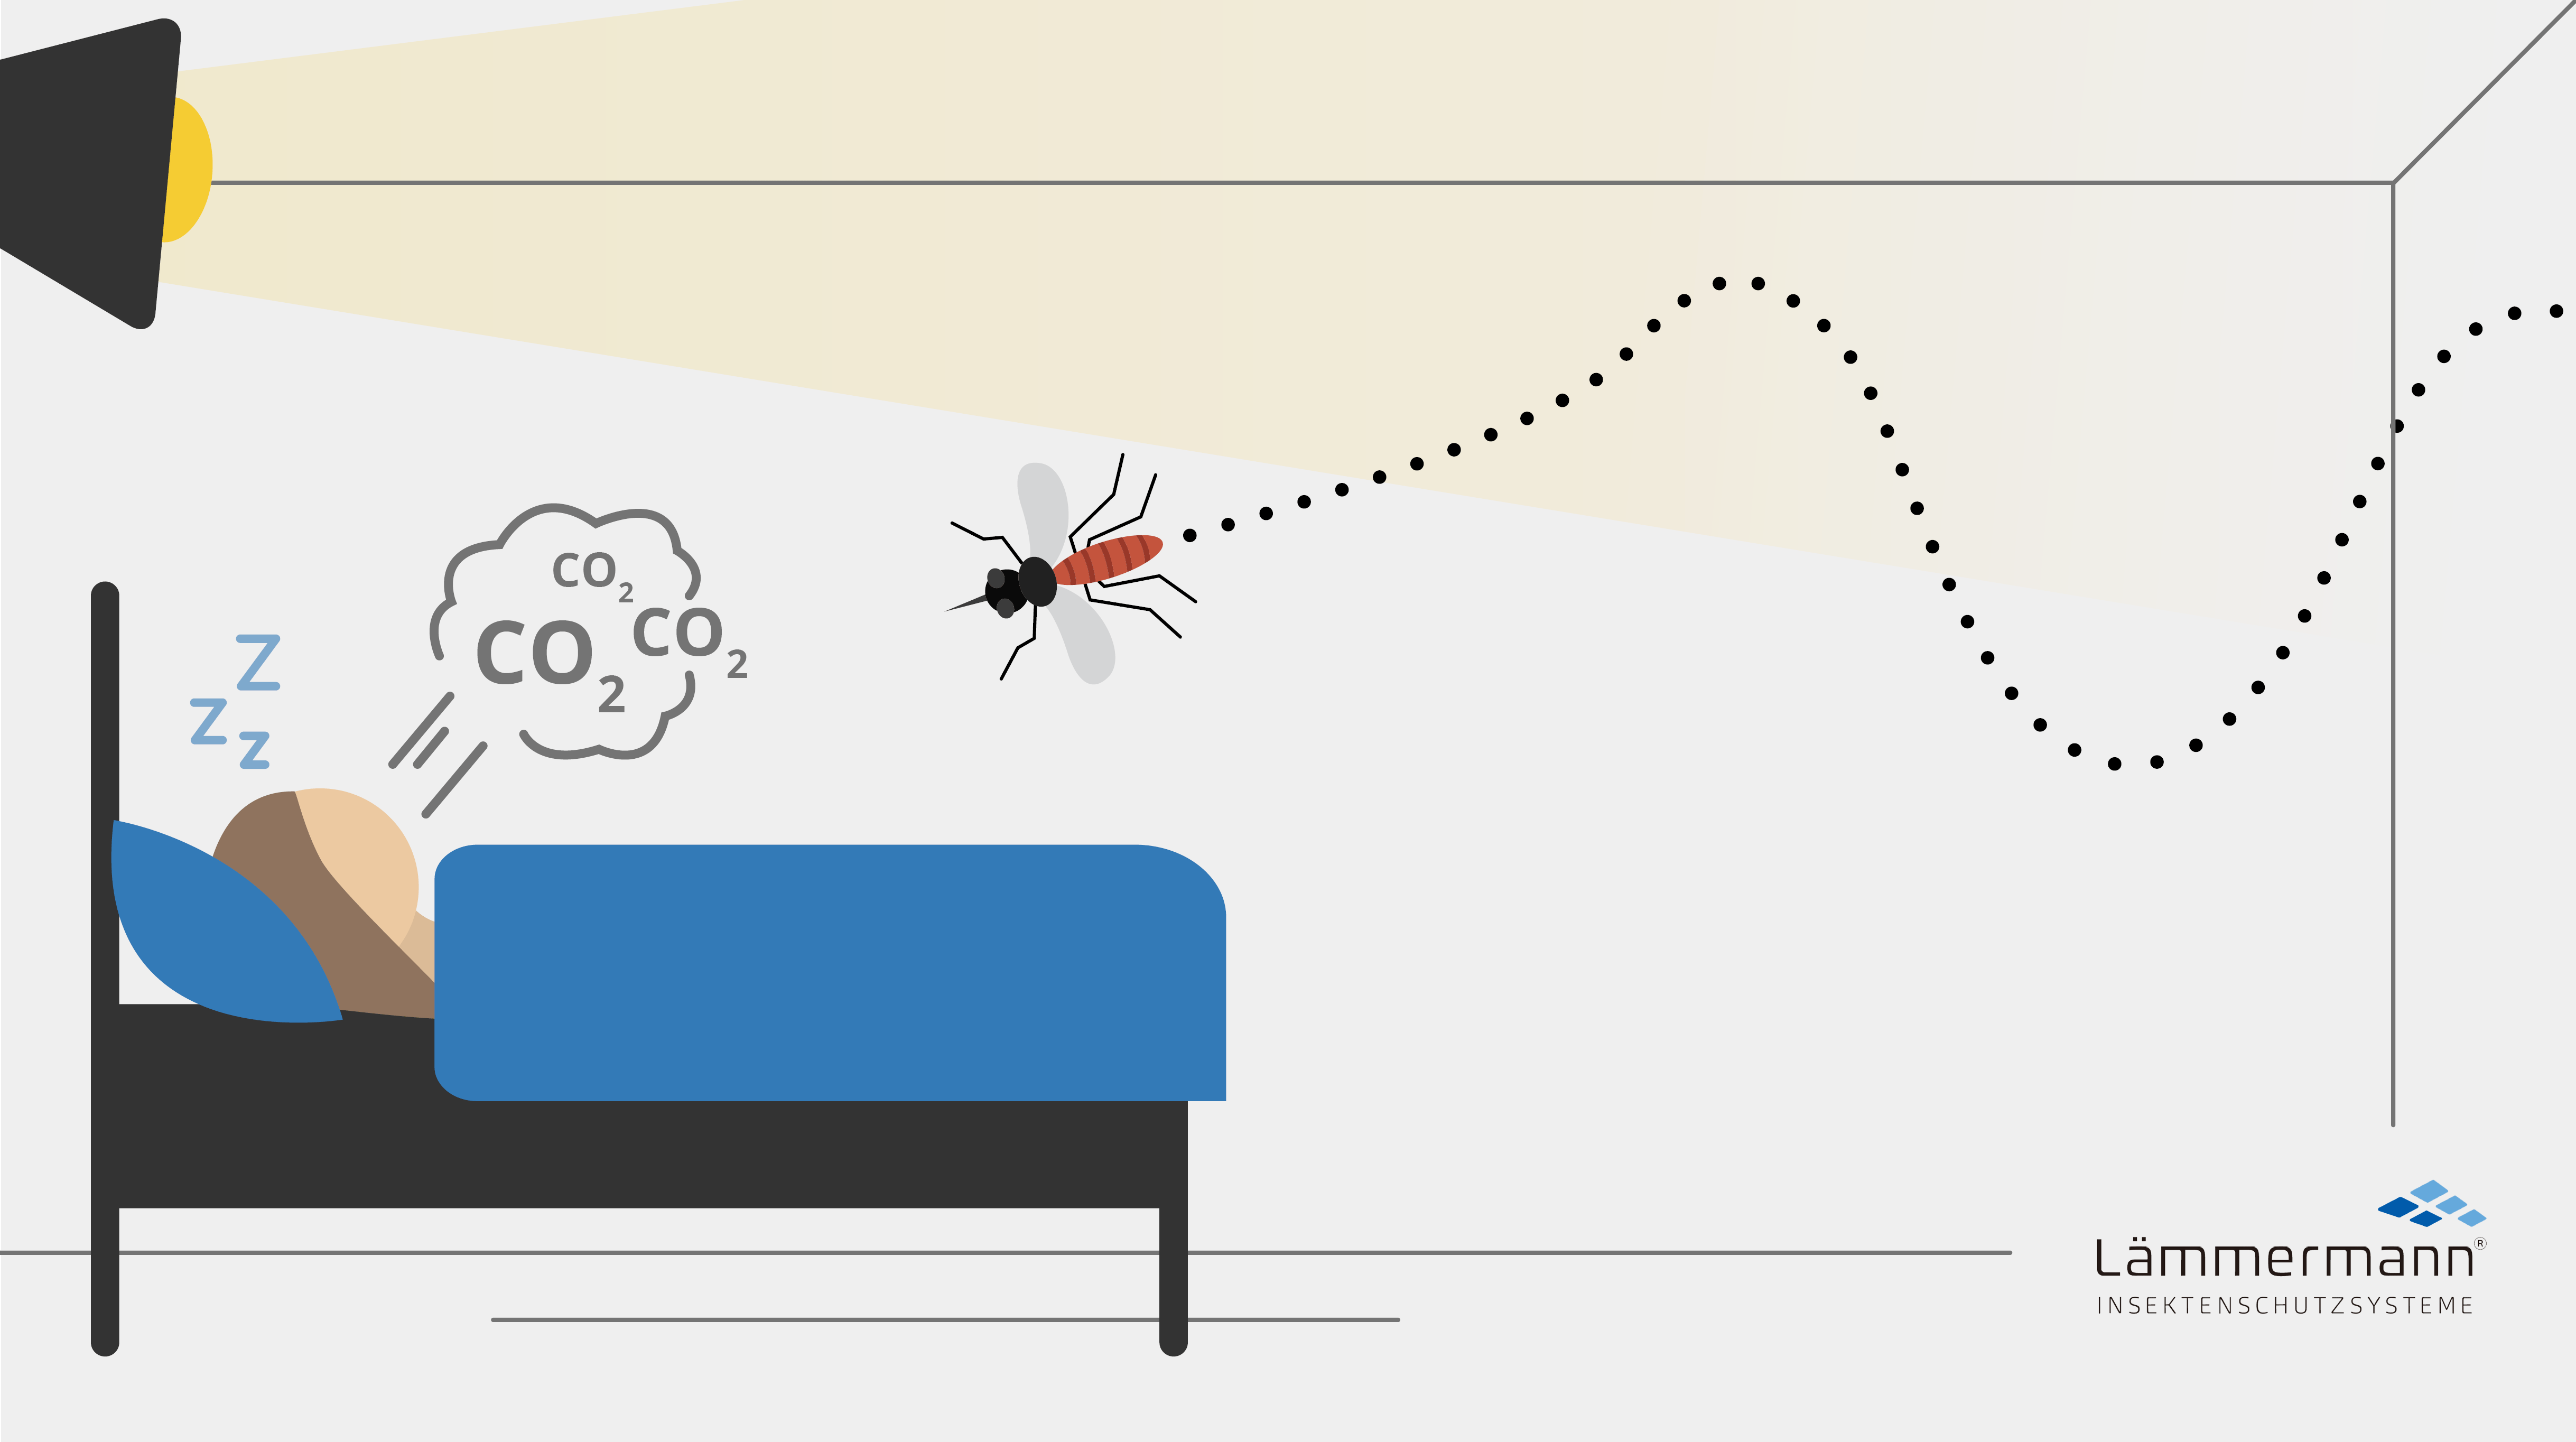 Warum werden Insekten von Licht angezogen? - Spektrum der Wissenschaft